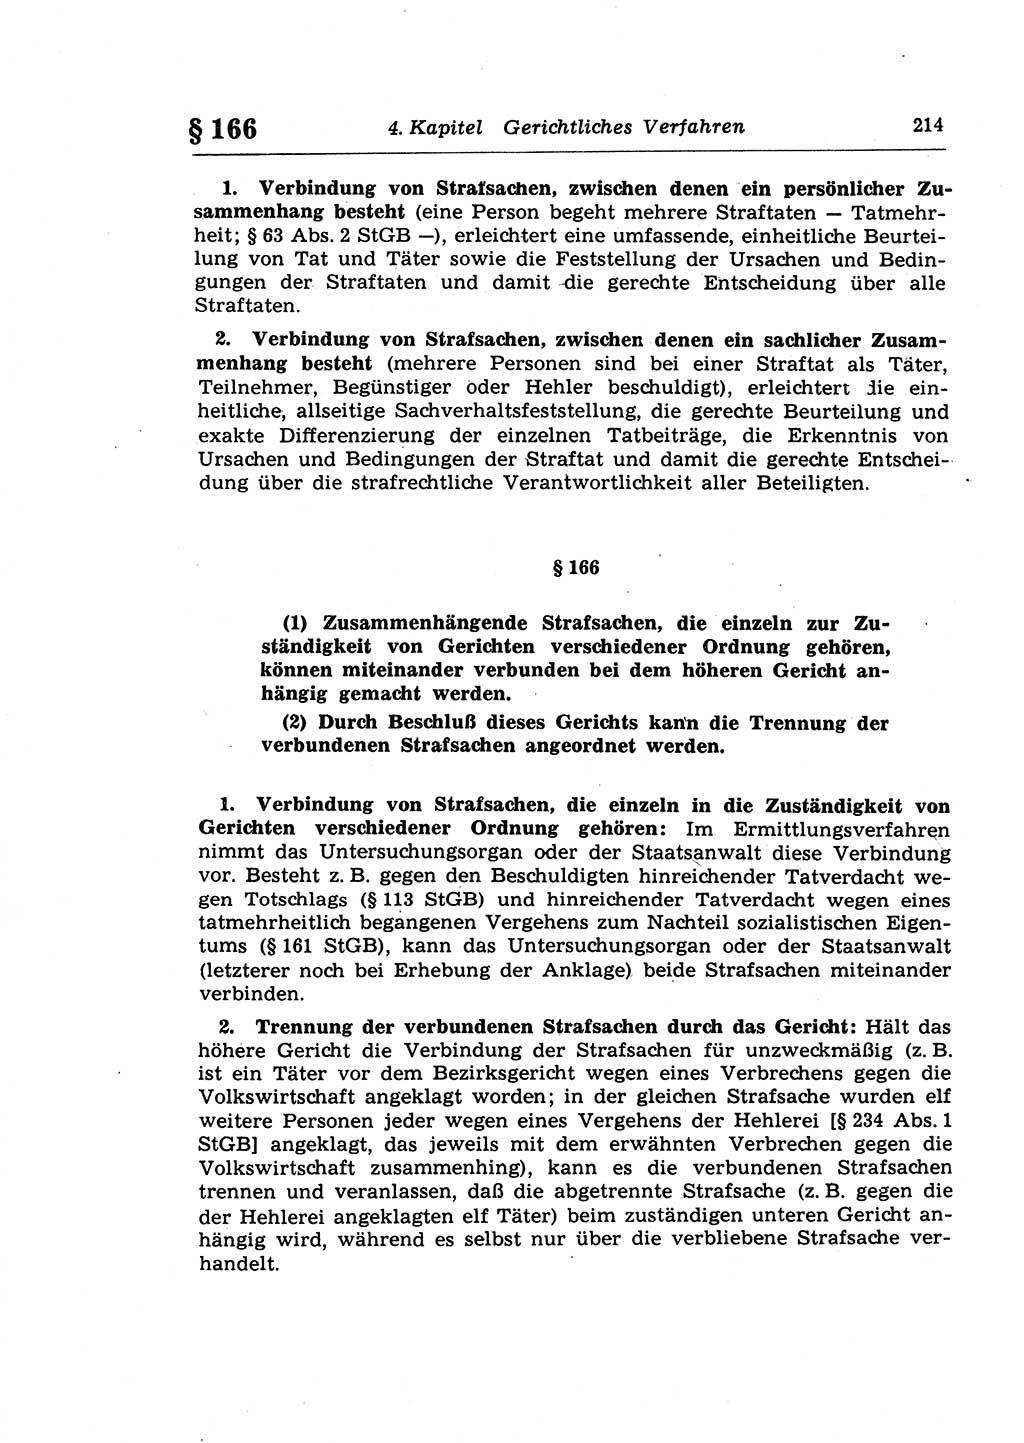 Strafprozeßrecht der DDR (Deutsche Demokratische Republik), Lehrkommentar zur Strafprozeßordnung (StPO) 1968, Seite 214 (Strafprozeßr. DDR Lehrkomm. StPO 19688, S. 214)